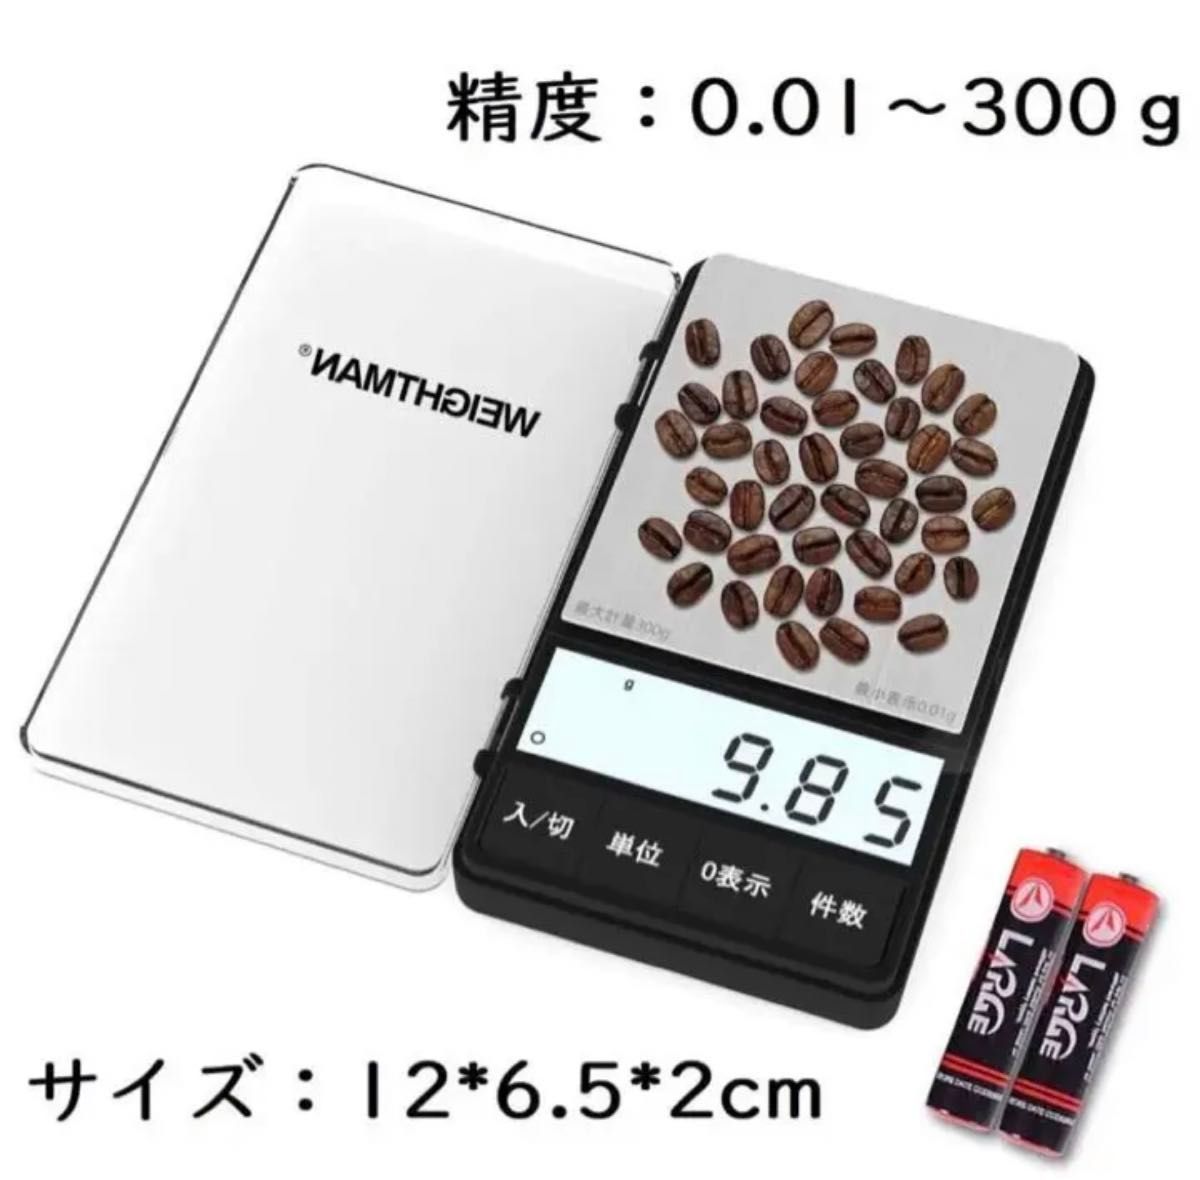 【送料無料】ポケットデジタルスケール 携帯タイプ 0.01g-300g 精密 日本語取説